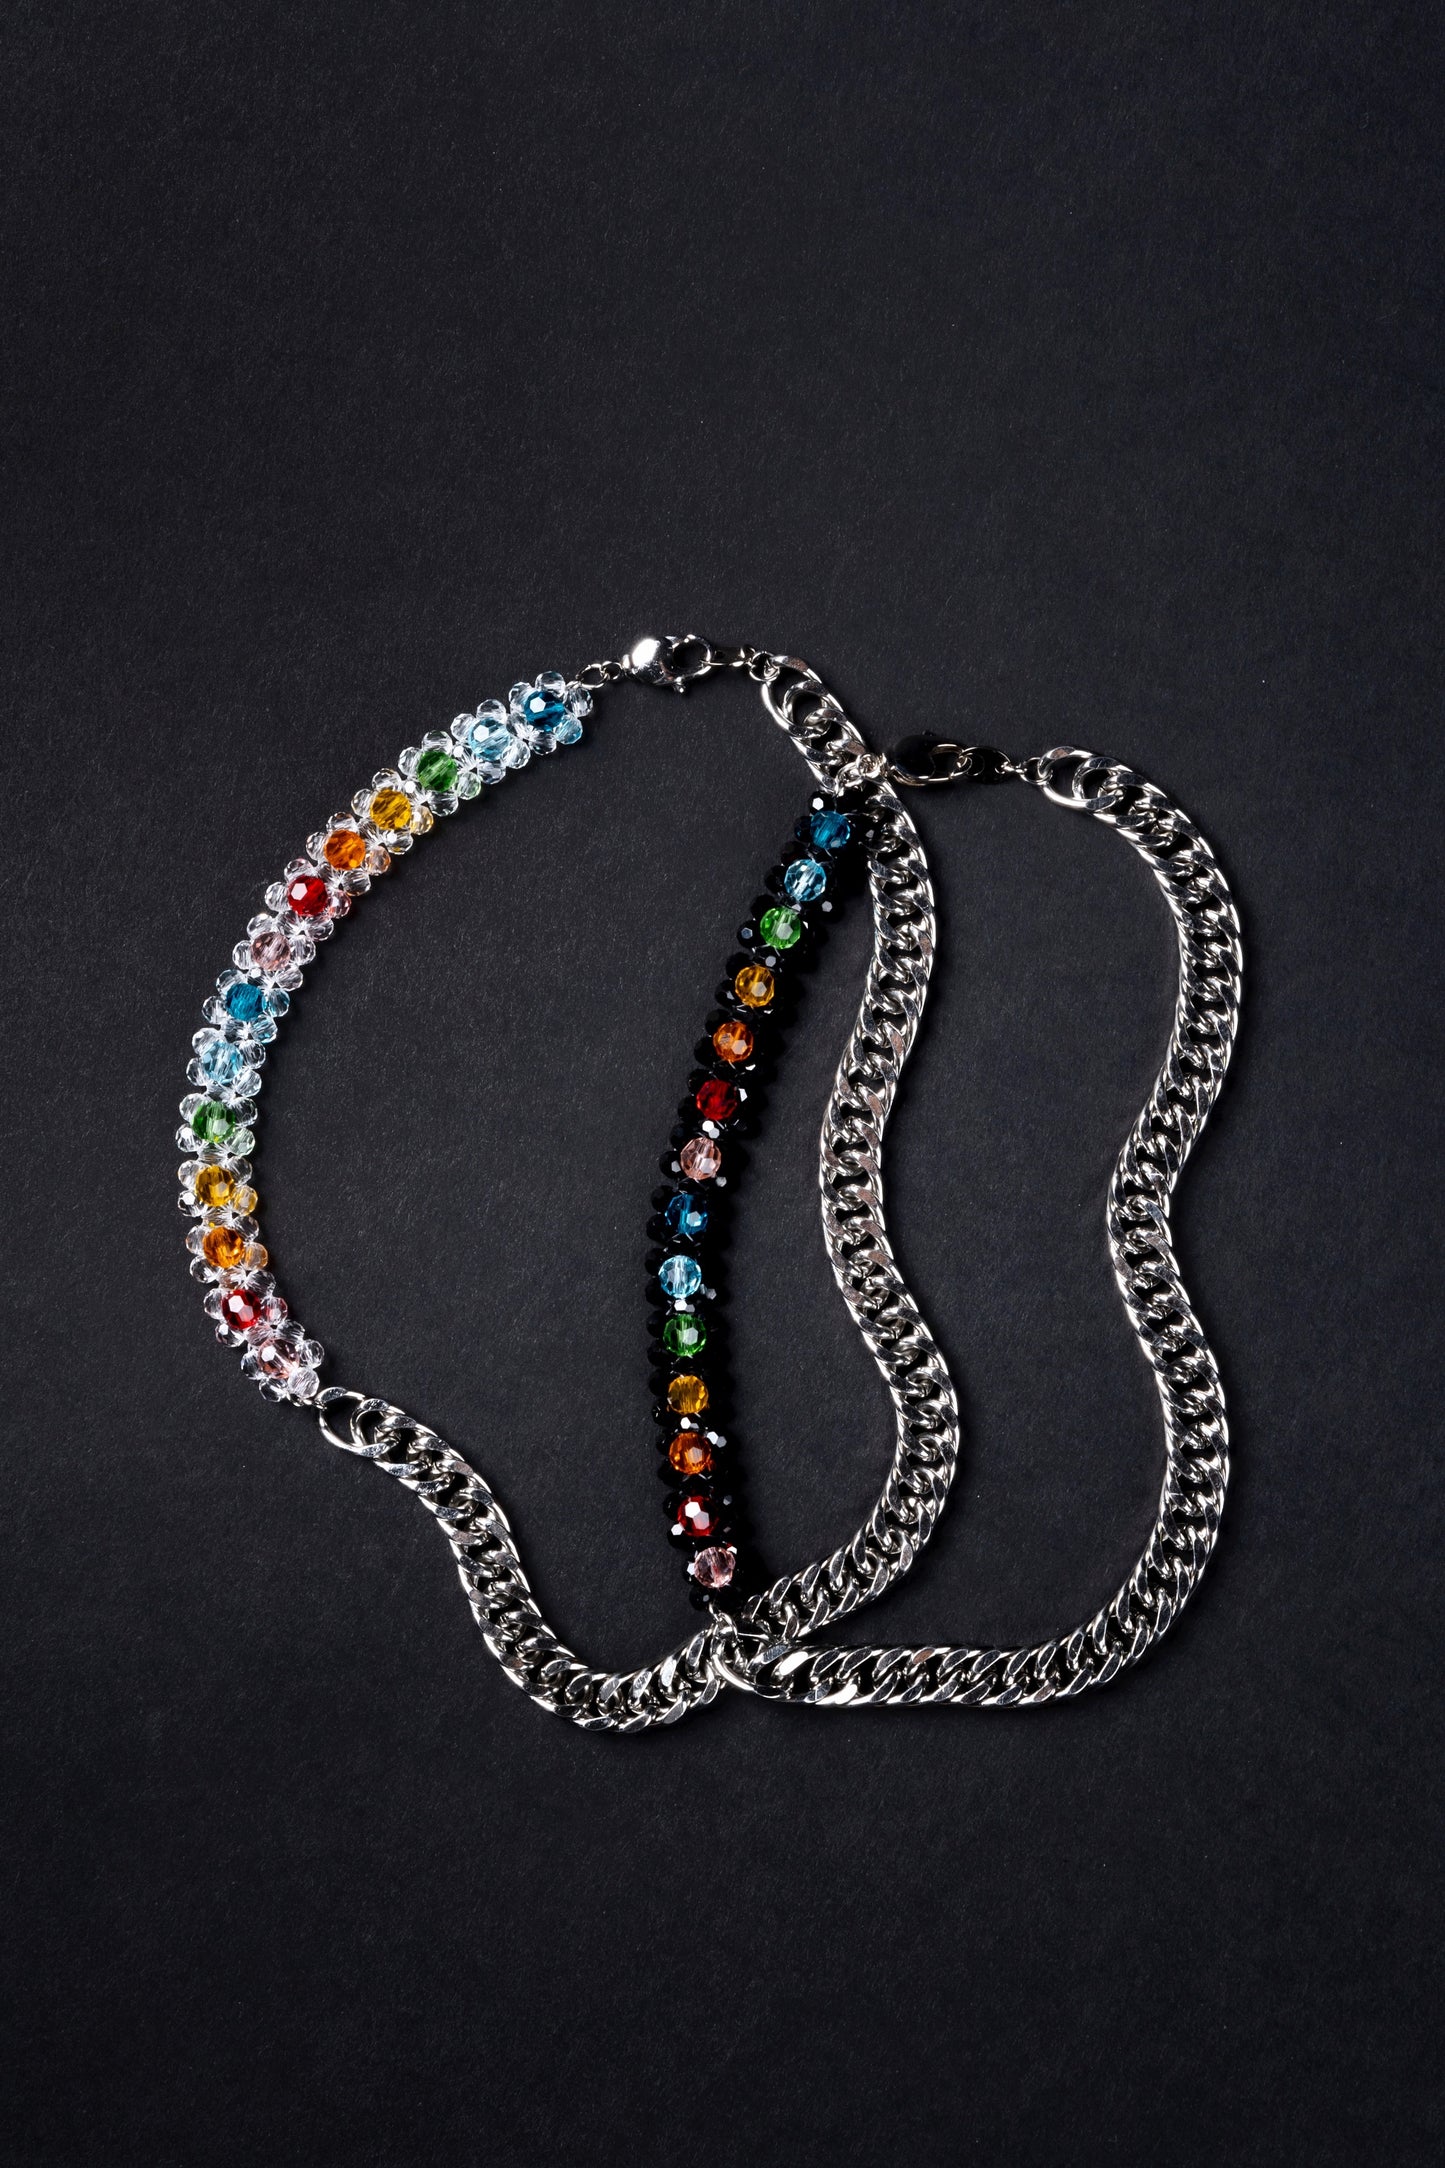 Crystal Bead Rainbow Beaded Chain Necklace Black